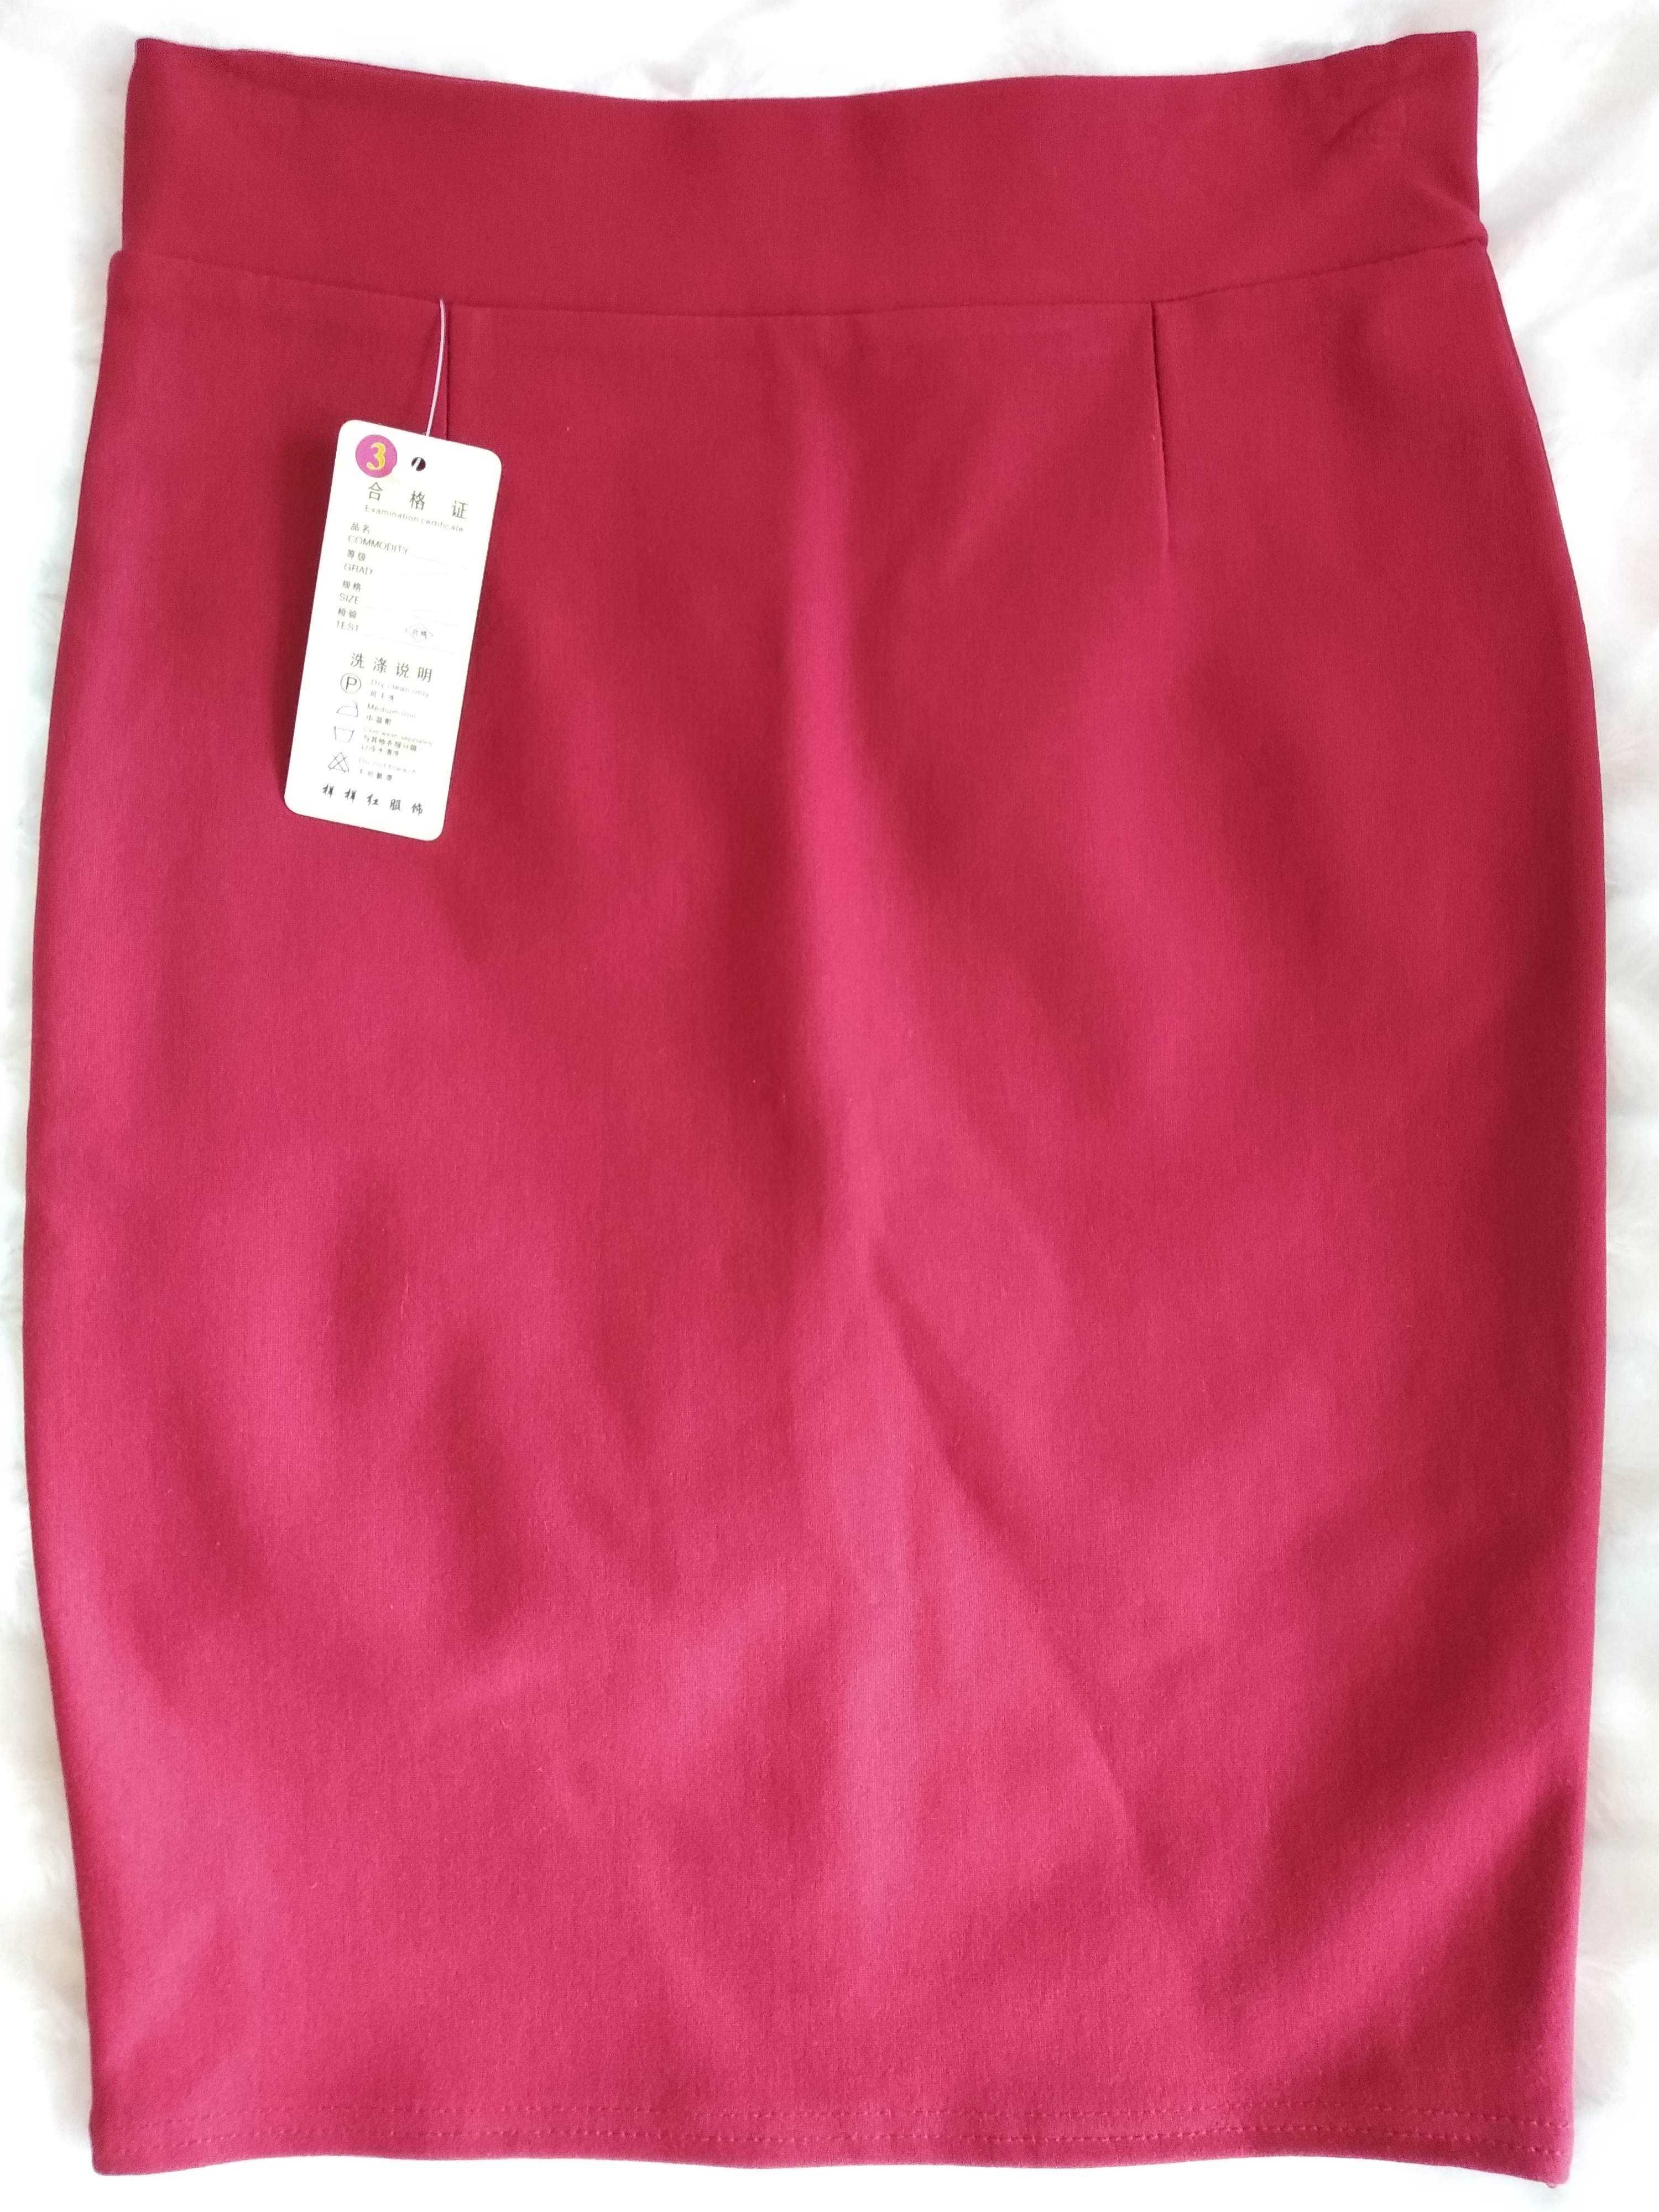 Женская красная юбка карандаш червона спідниця